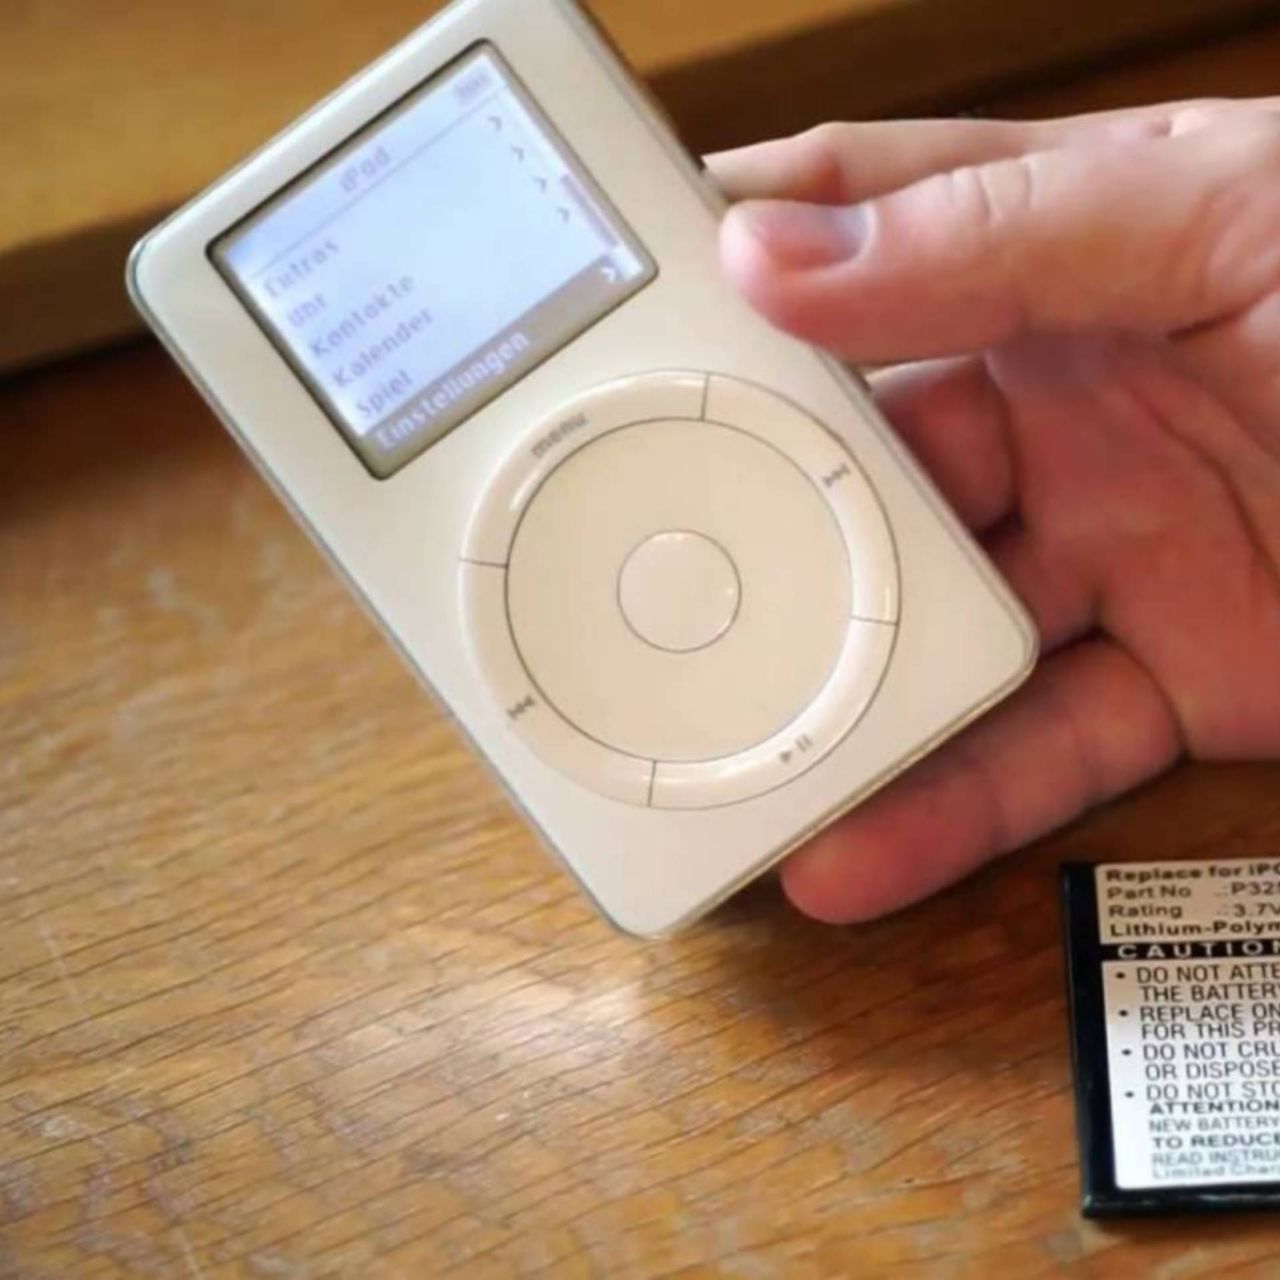 Apple iPod - pierwsza generacja modelu, znanego później jako Classic